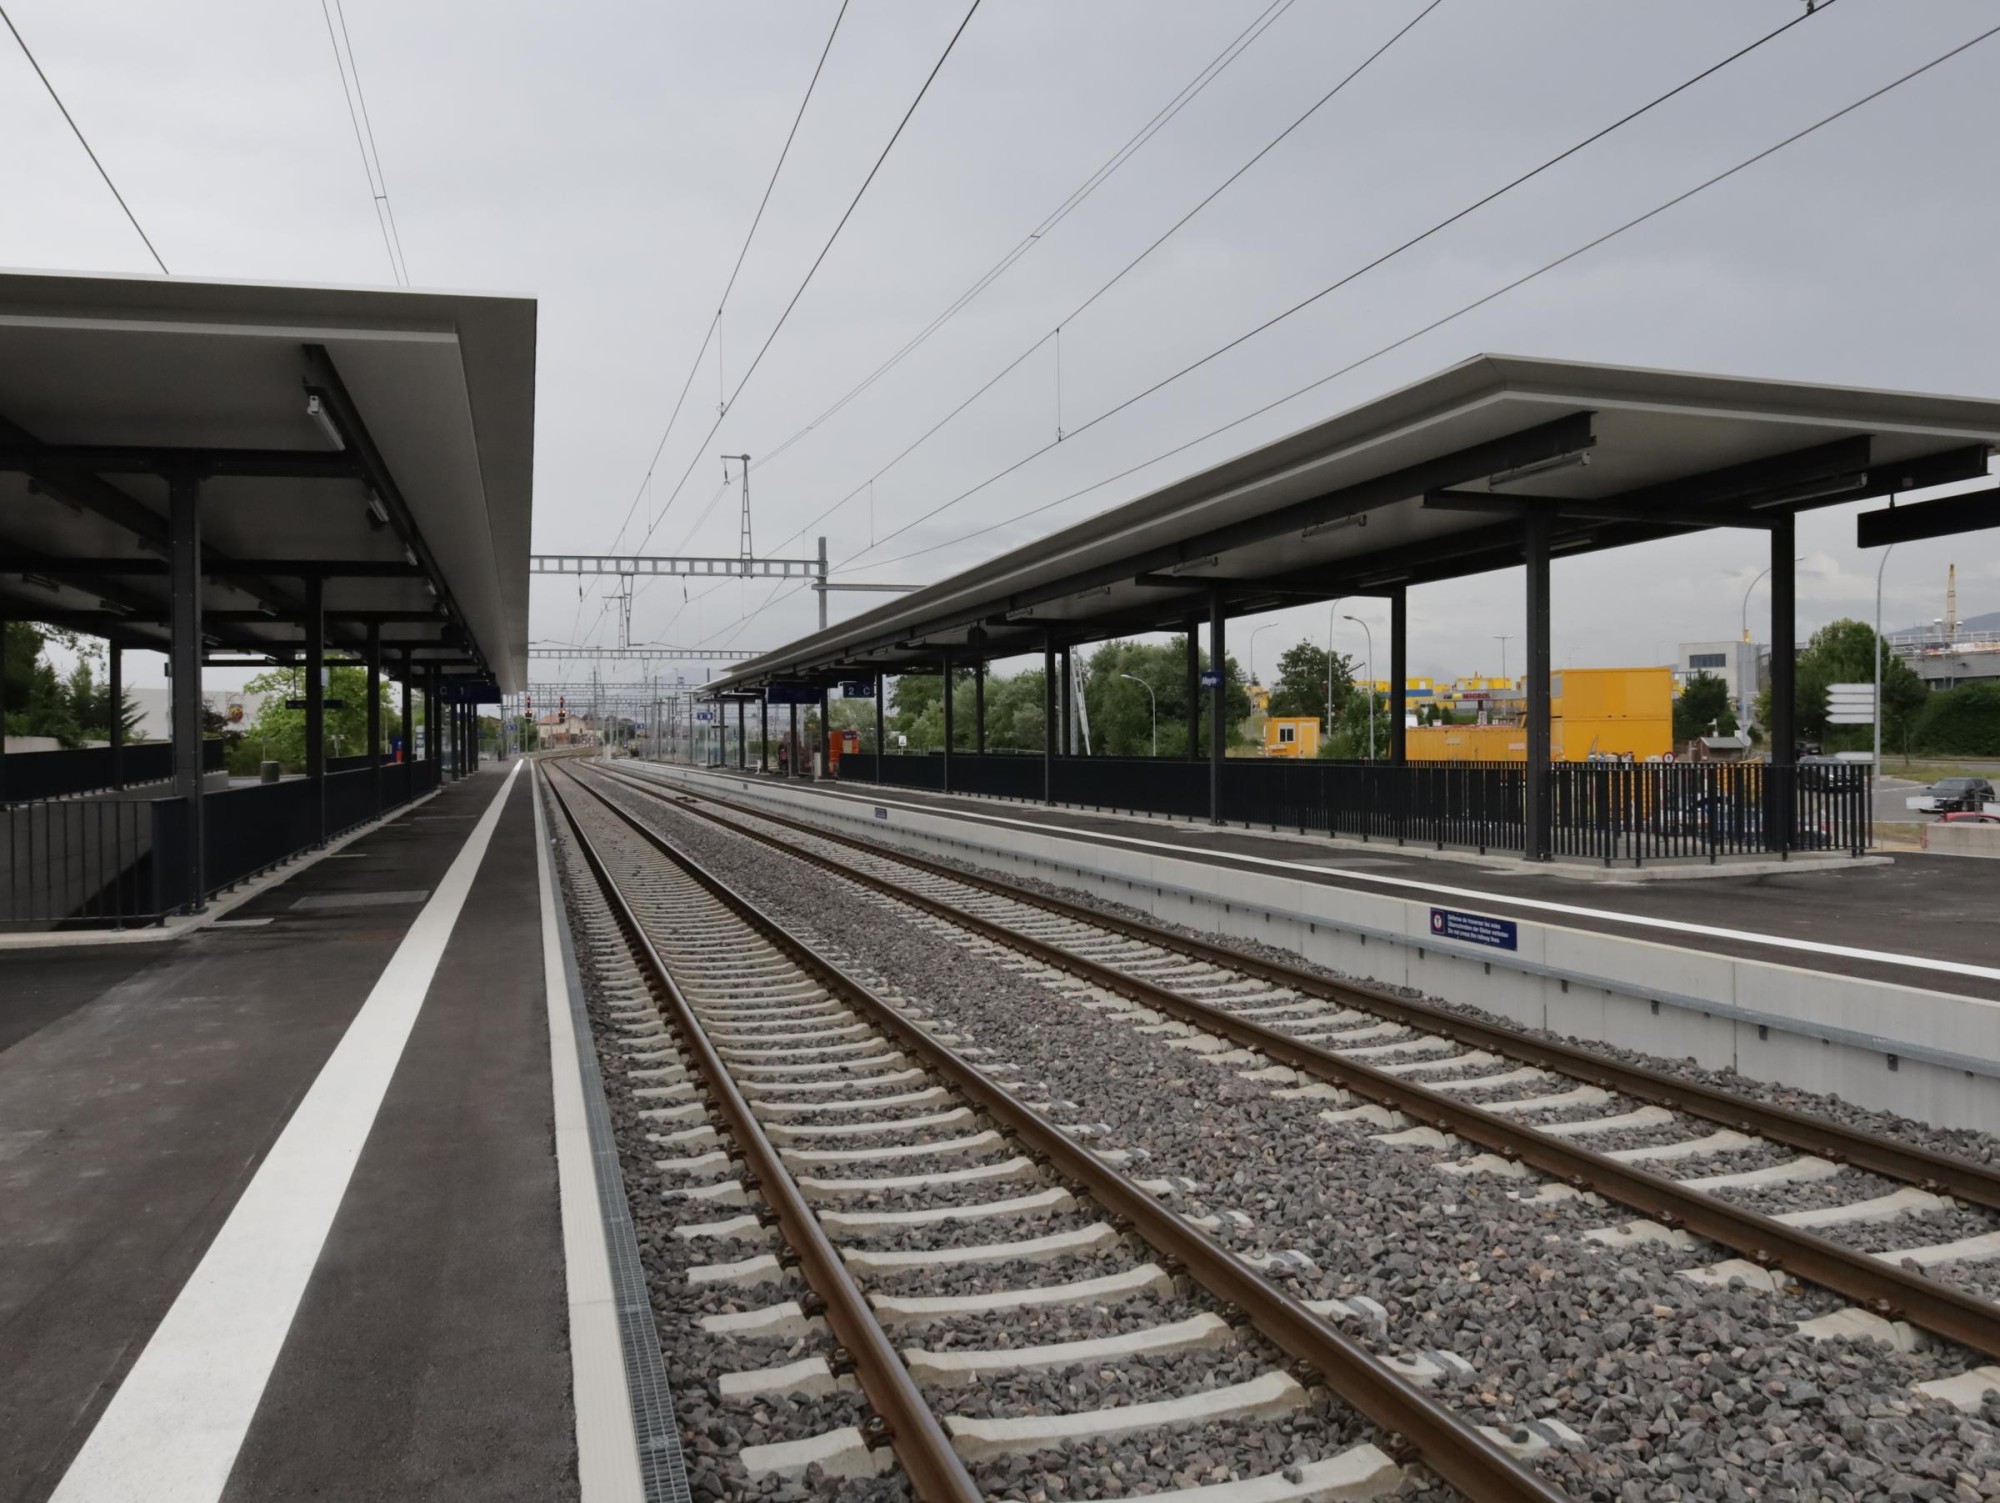 La gare de Meyrin a été inaugurée le vendredi 1er juillet 2022, par les autorités locales et cantonales ainsi que par des représentants de Lémanis et des CFF.